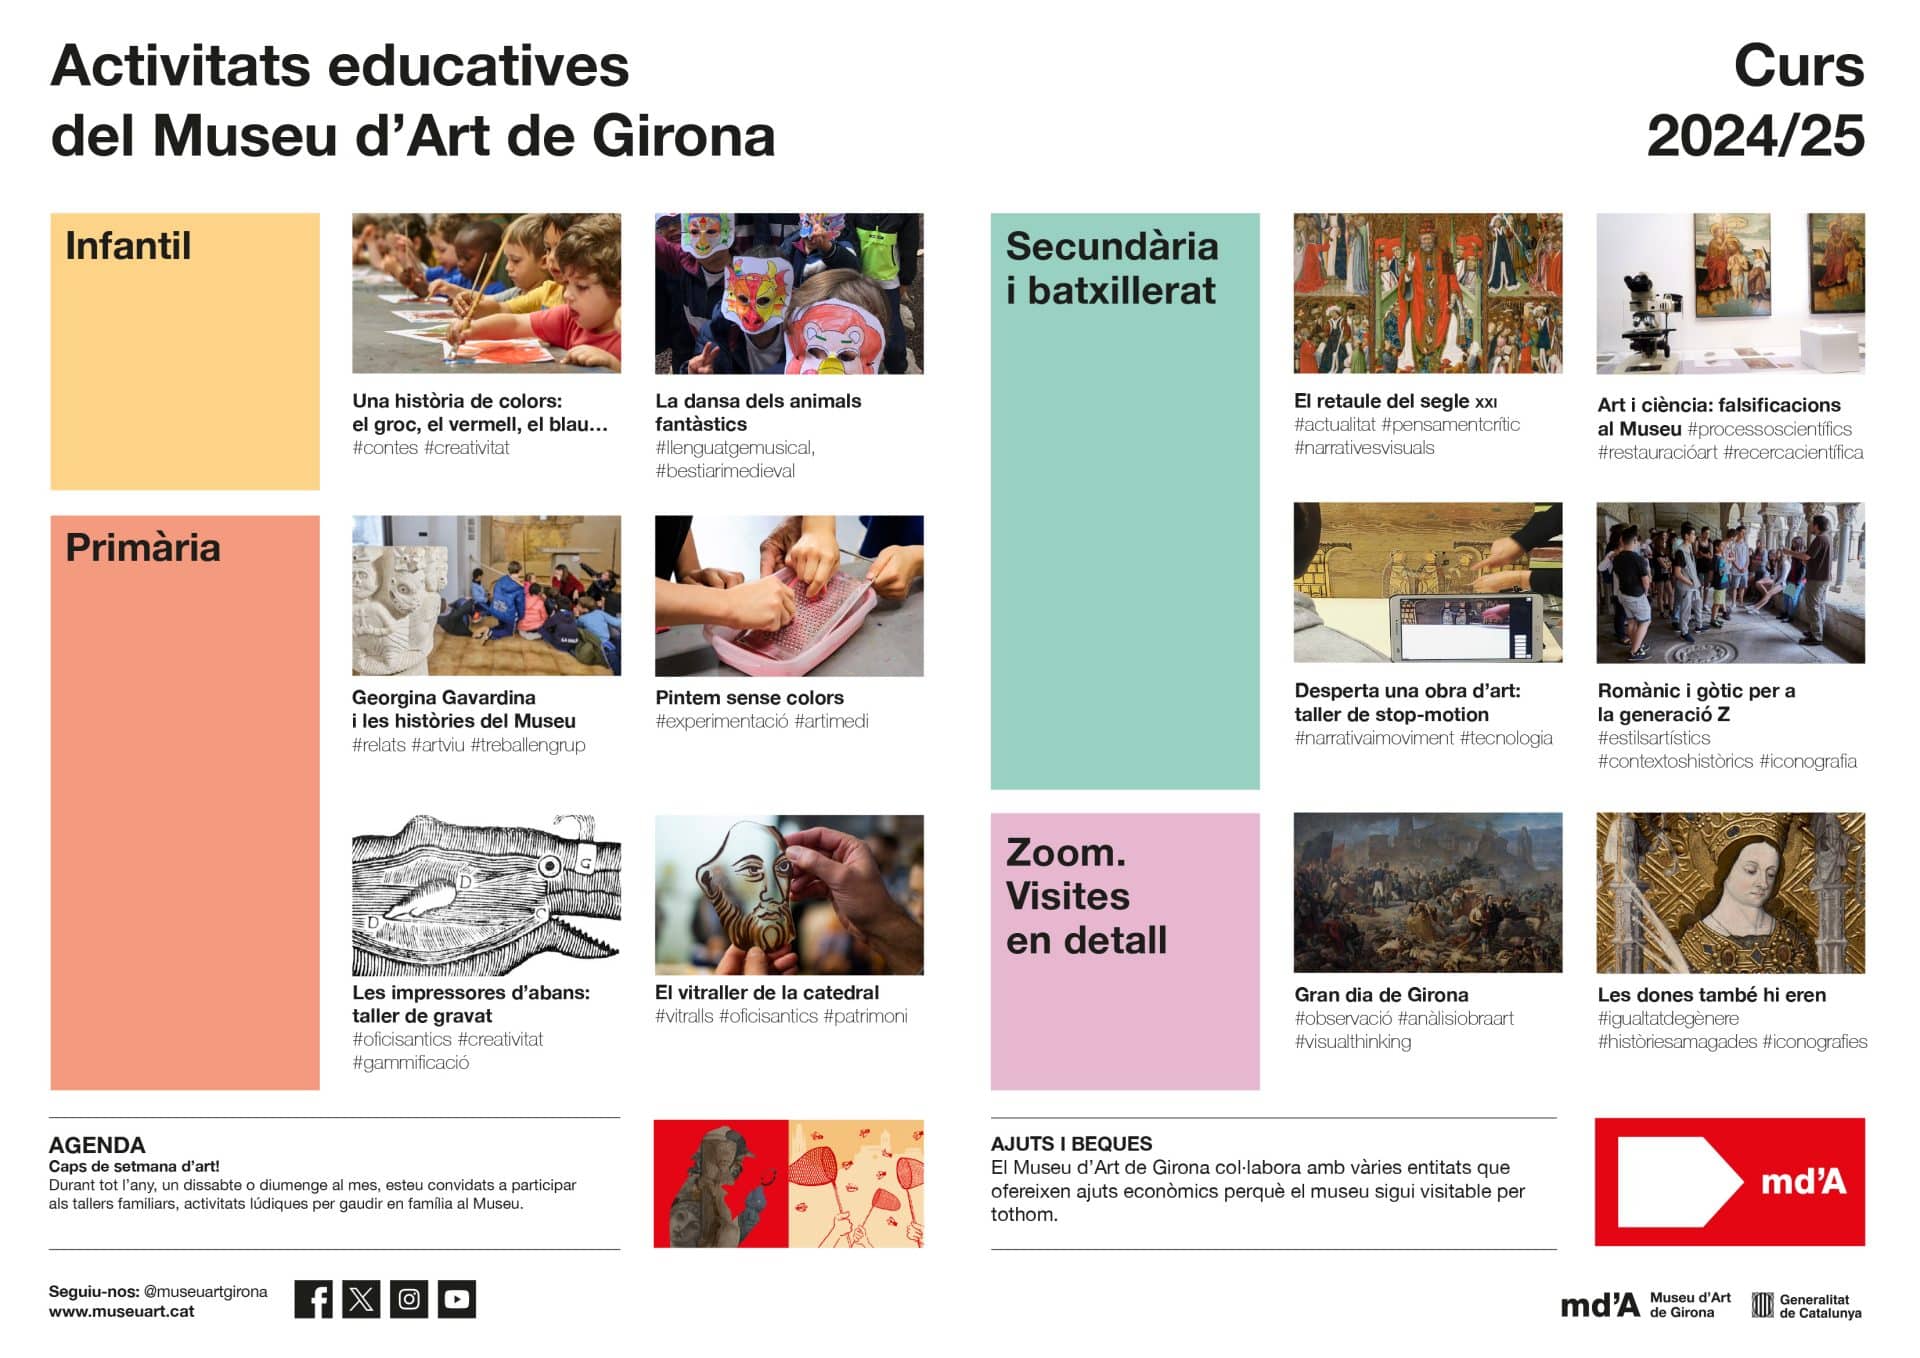 Resum de totes les activitats educatives del Museu d'Art de Girona